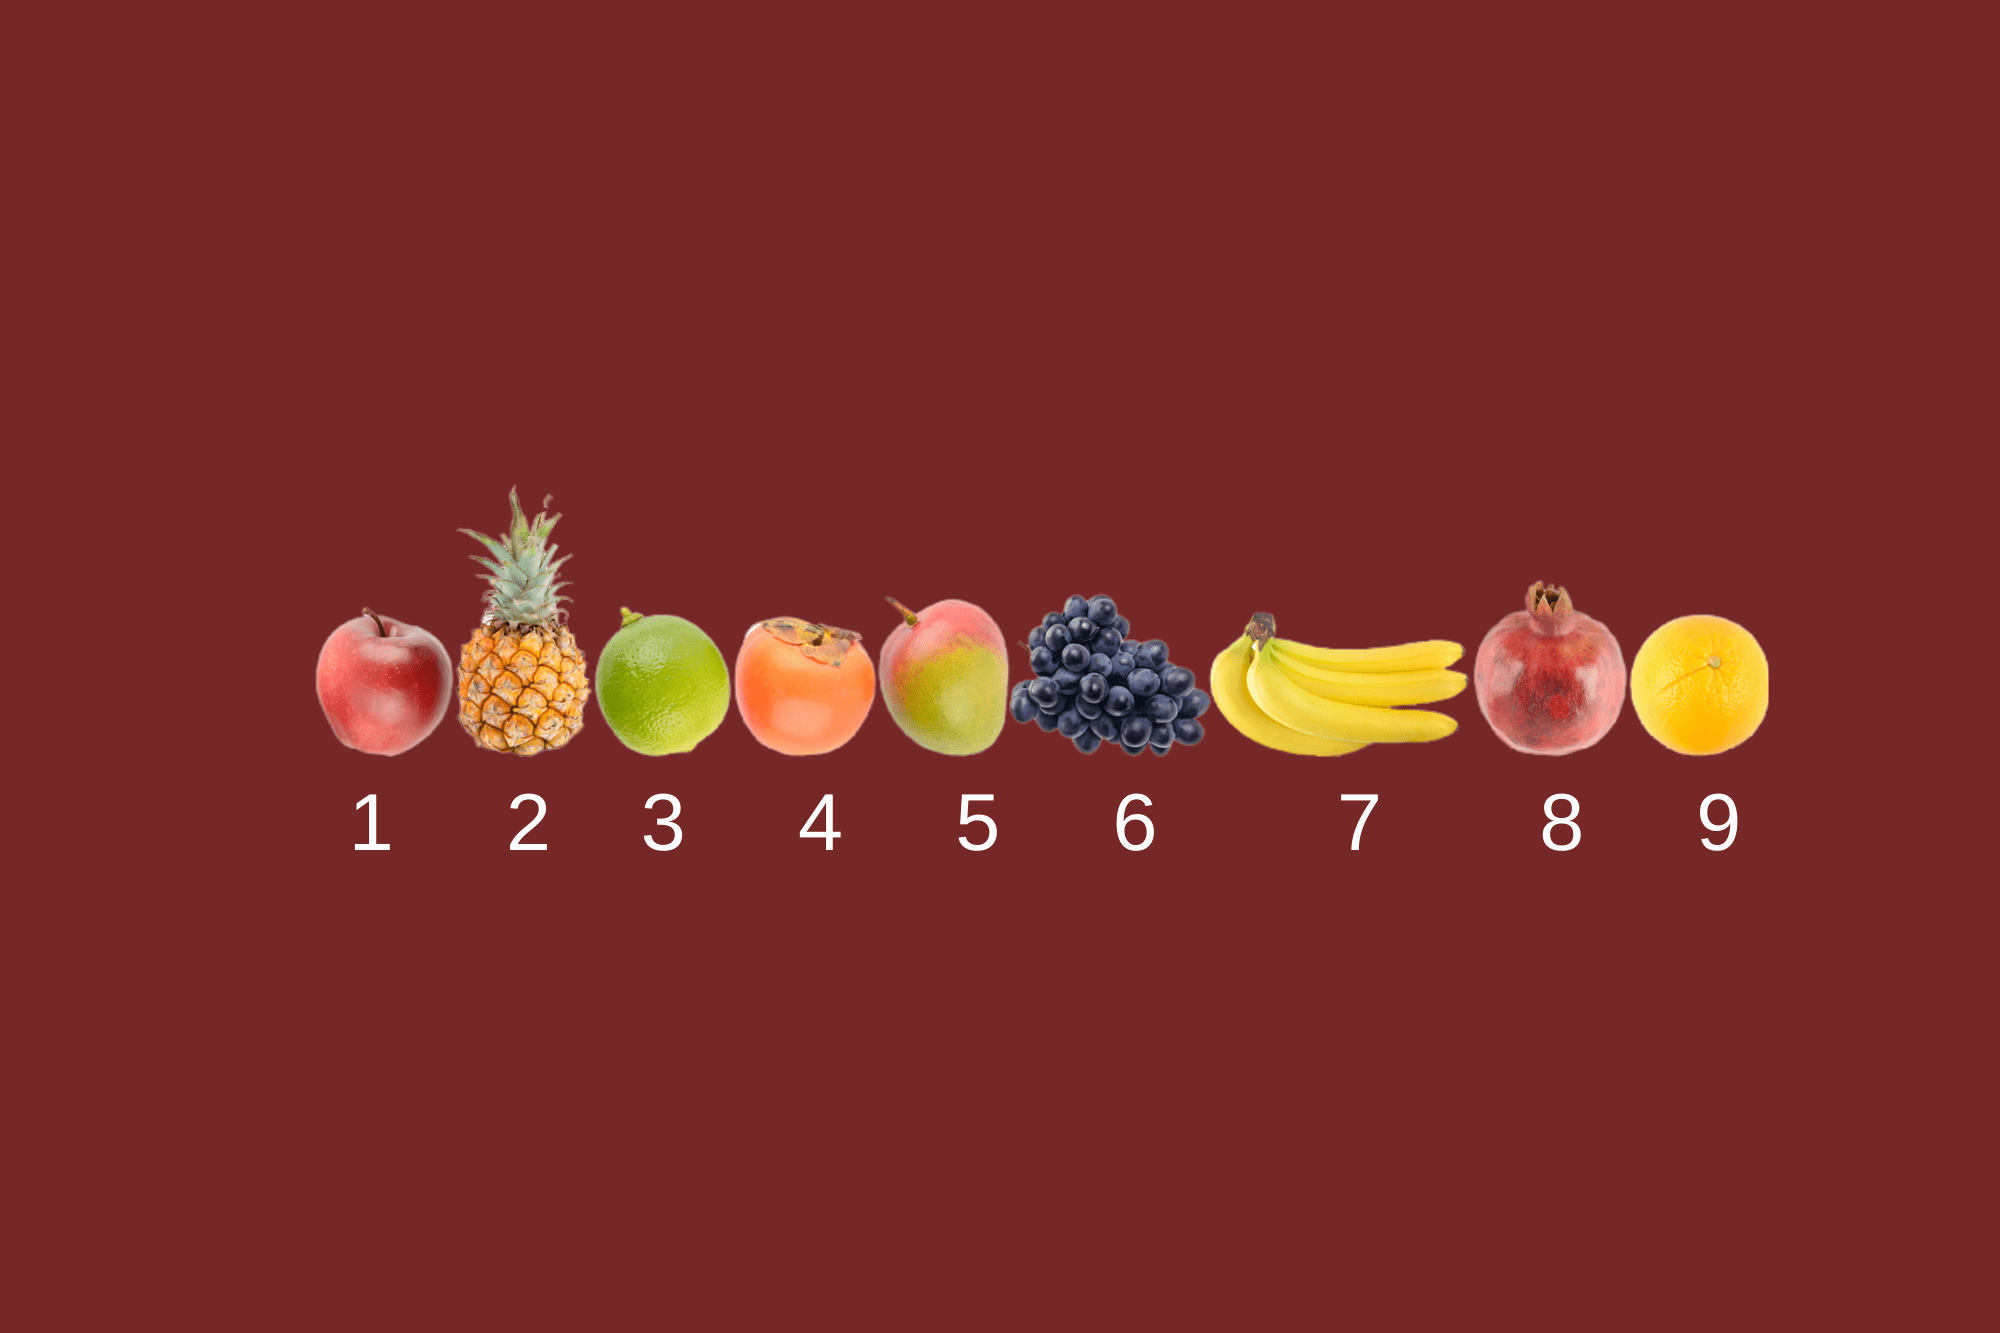 Угадайте, какой фрукт изображен на фотографии! Забавный тест для вас